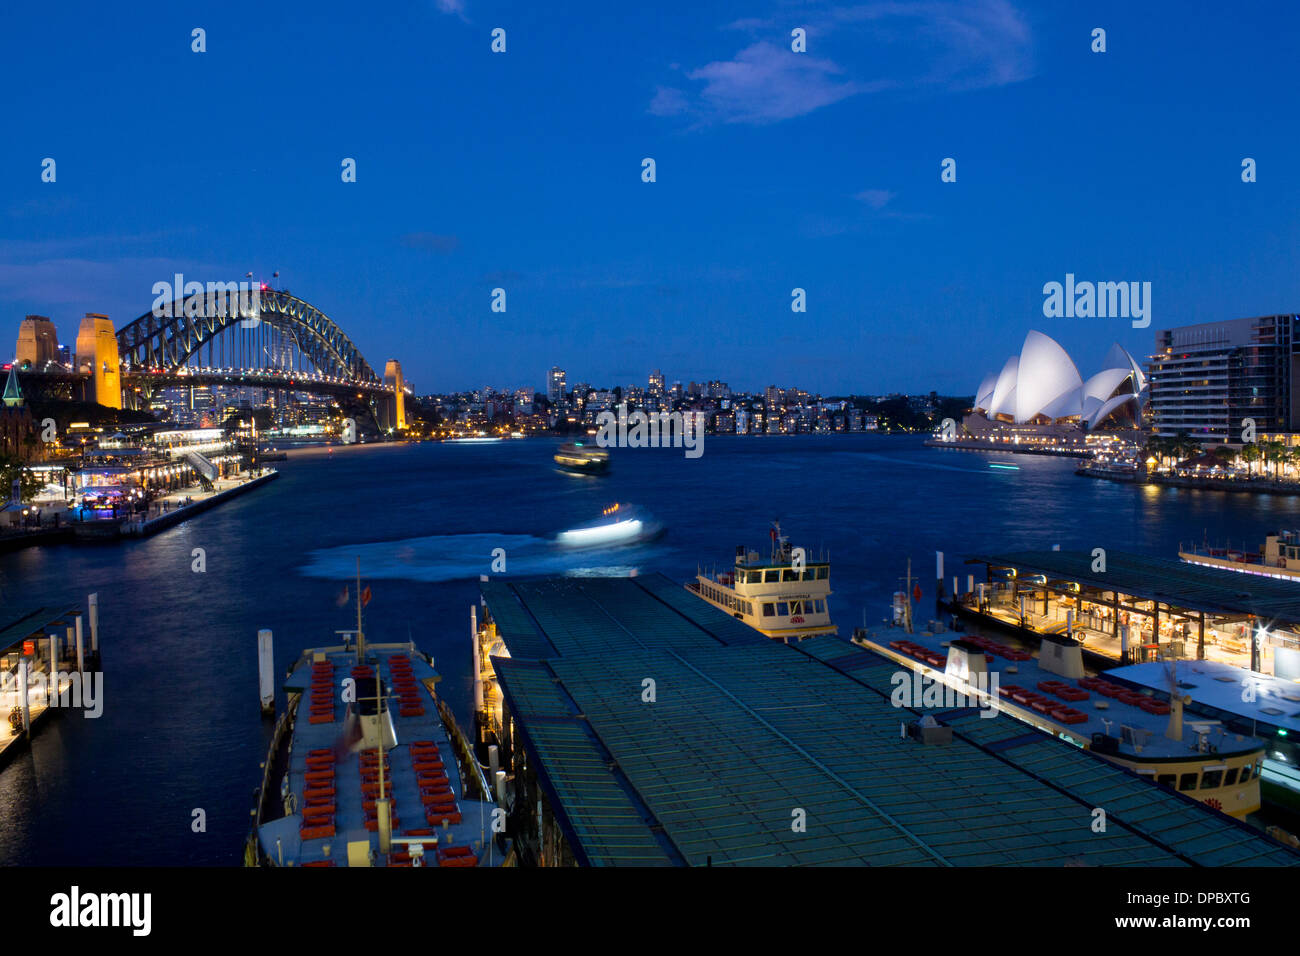 Circular Quay la nuit avec des bacs à l'arrivée et au départ, le Harbour Bridge et l'Opera House Sydney NSW Australie Nouvelle Galles du Sud Banque D'Images